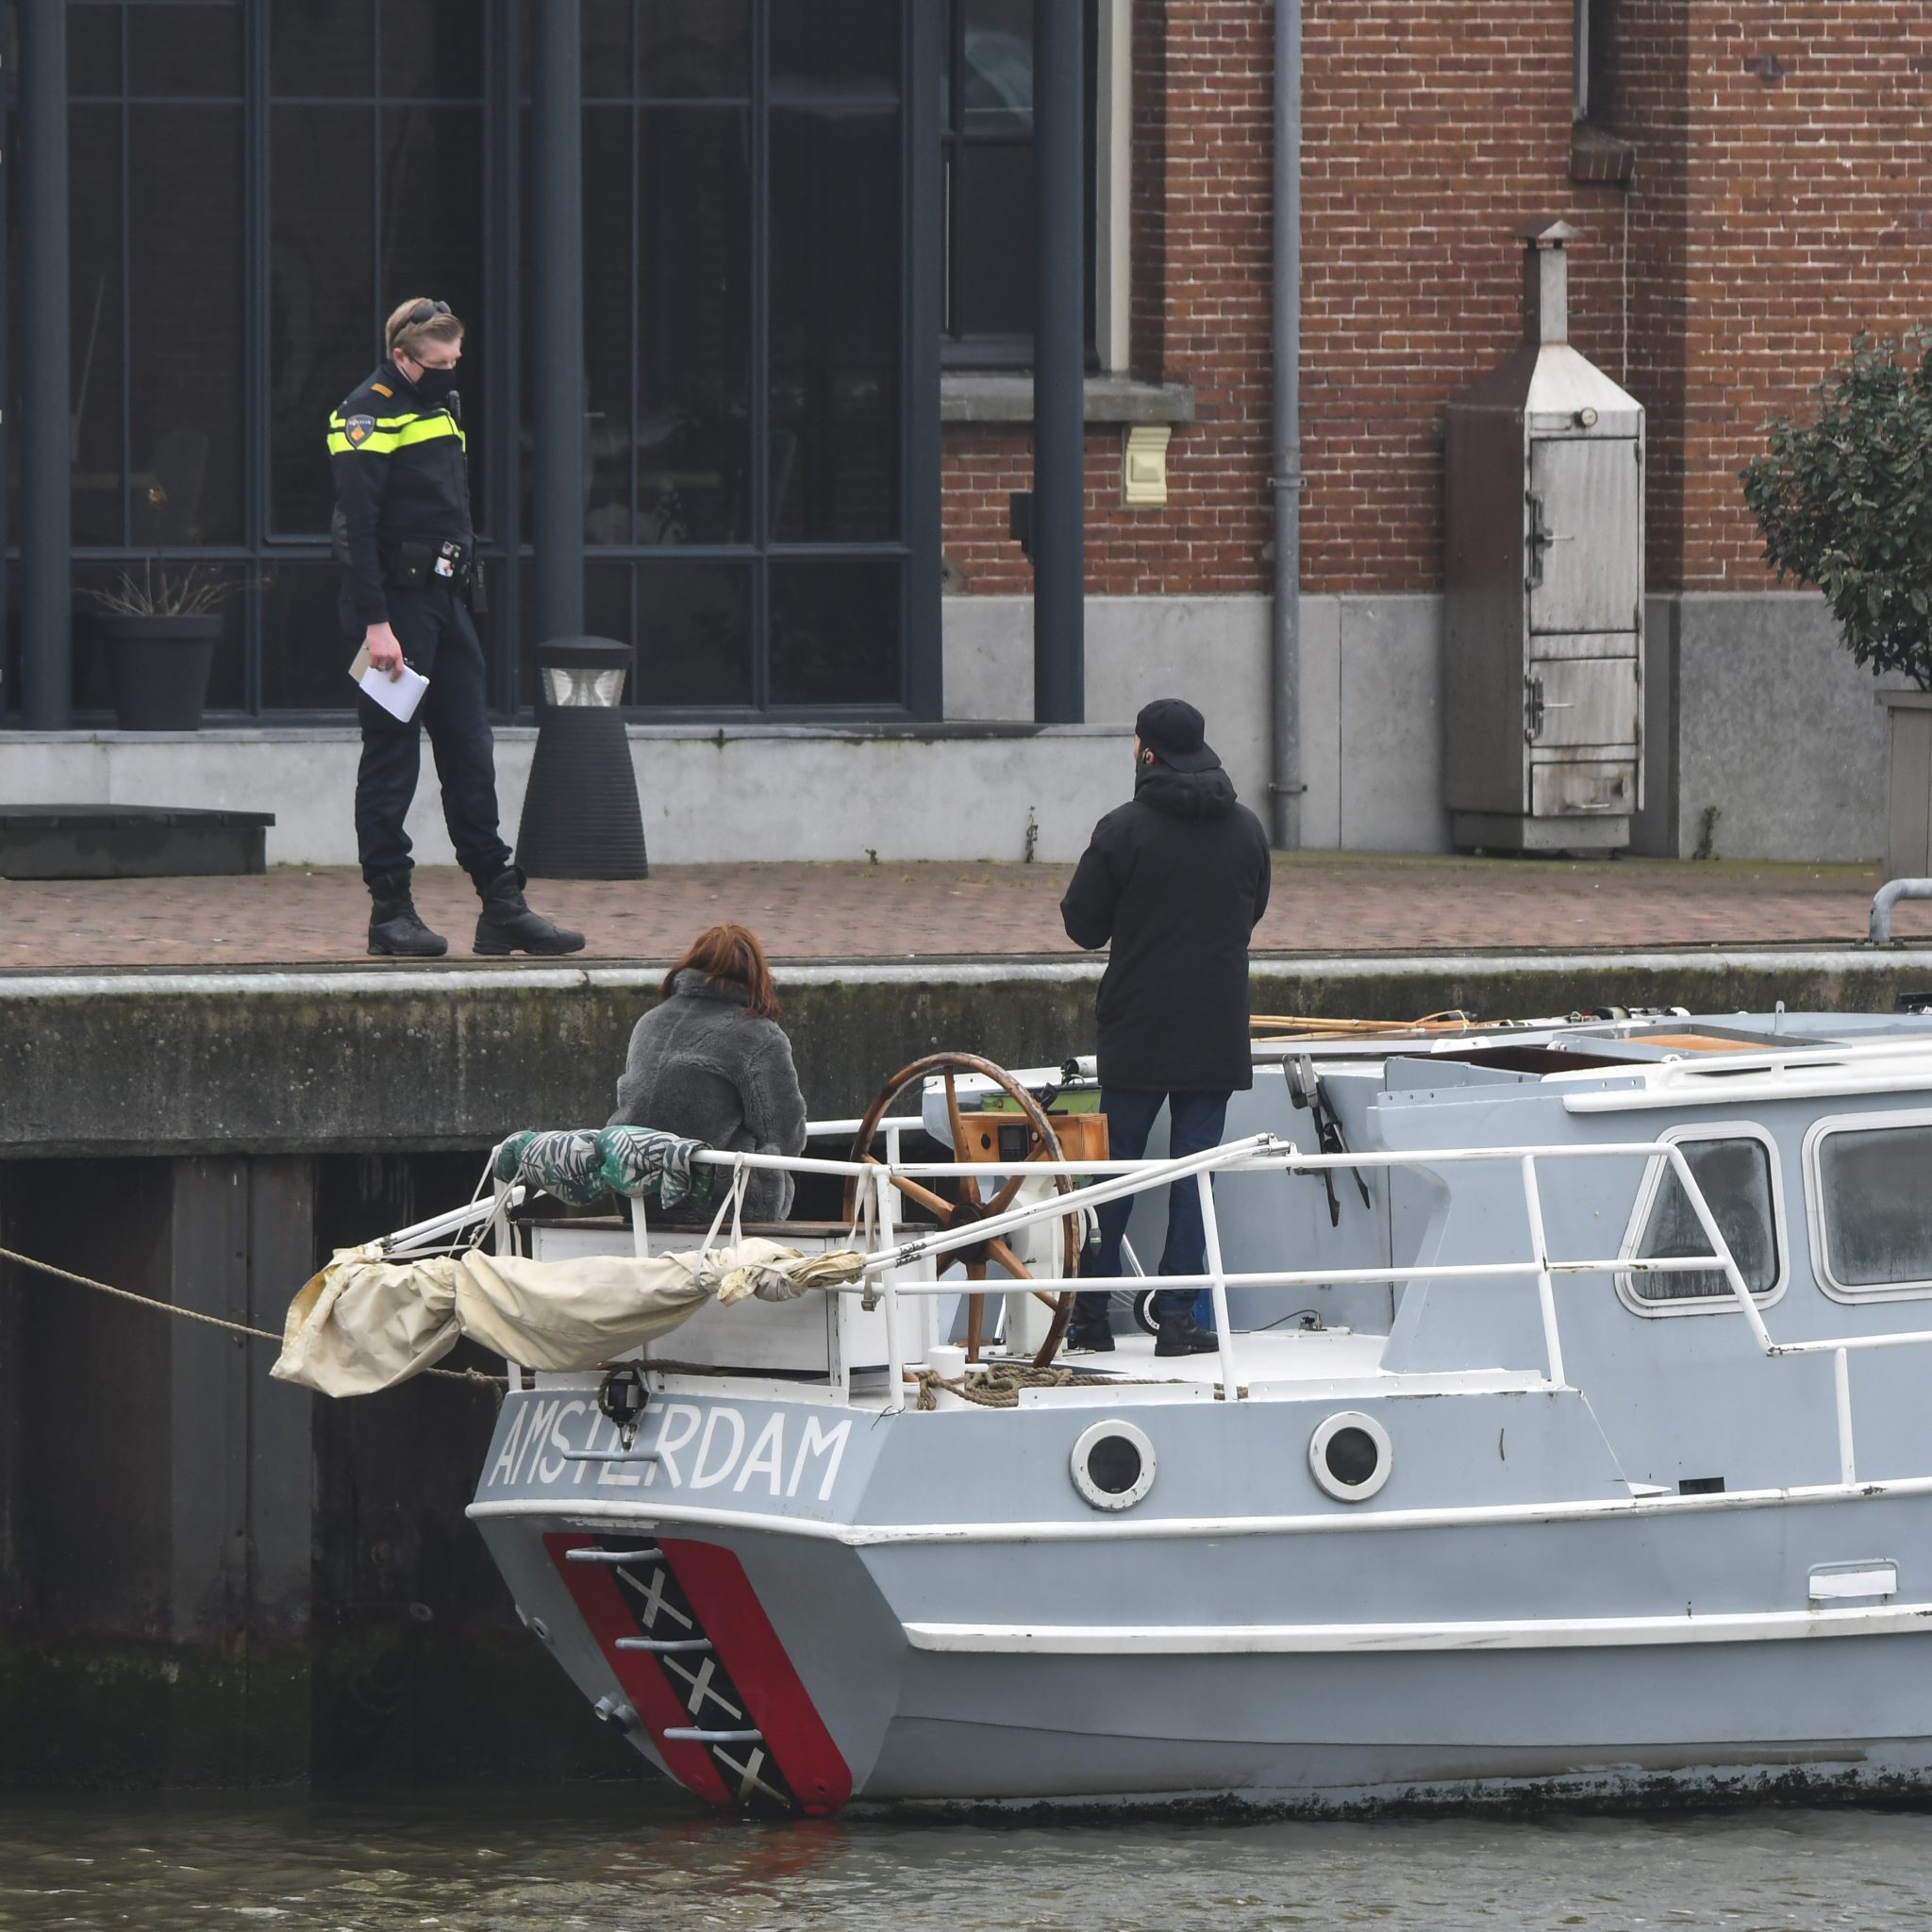 De boot van Douwe Bob ligt afgemeerd in de haven van Harlingen. (Foto ANP/Kappers Media)